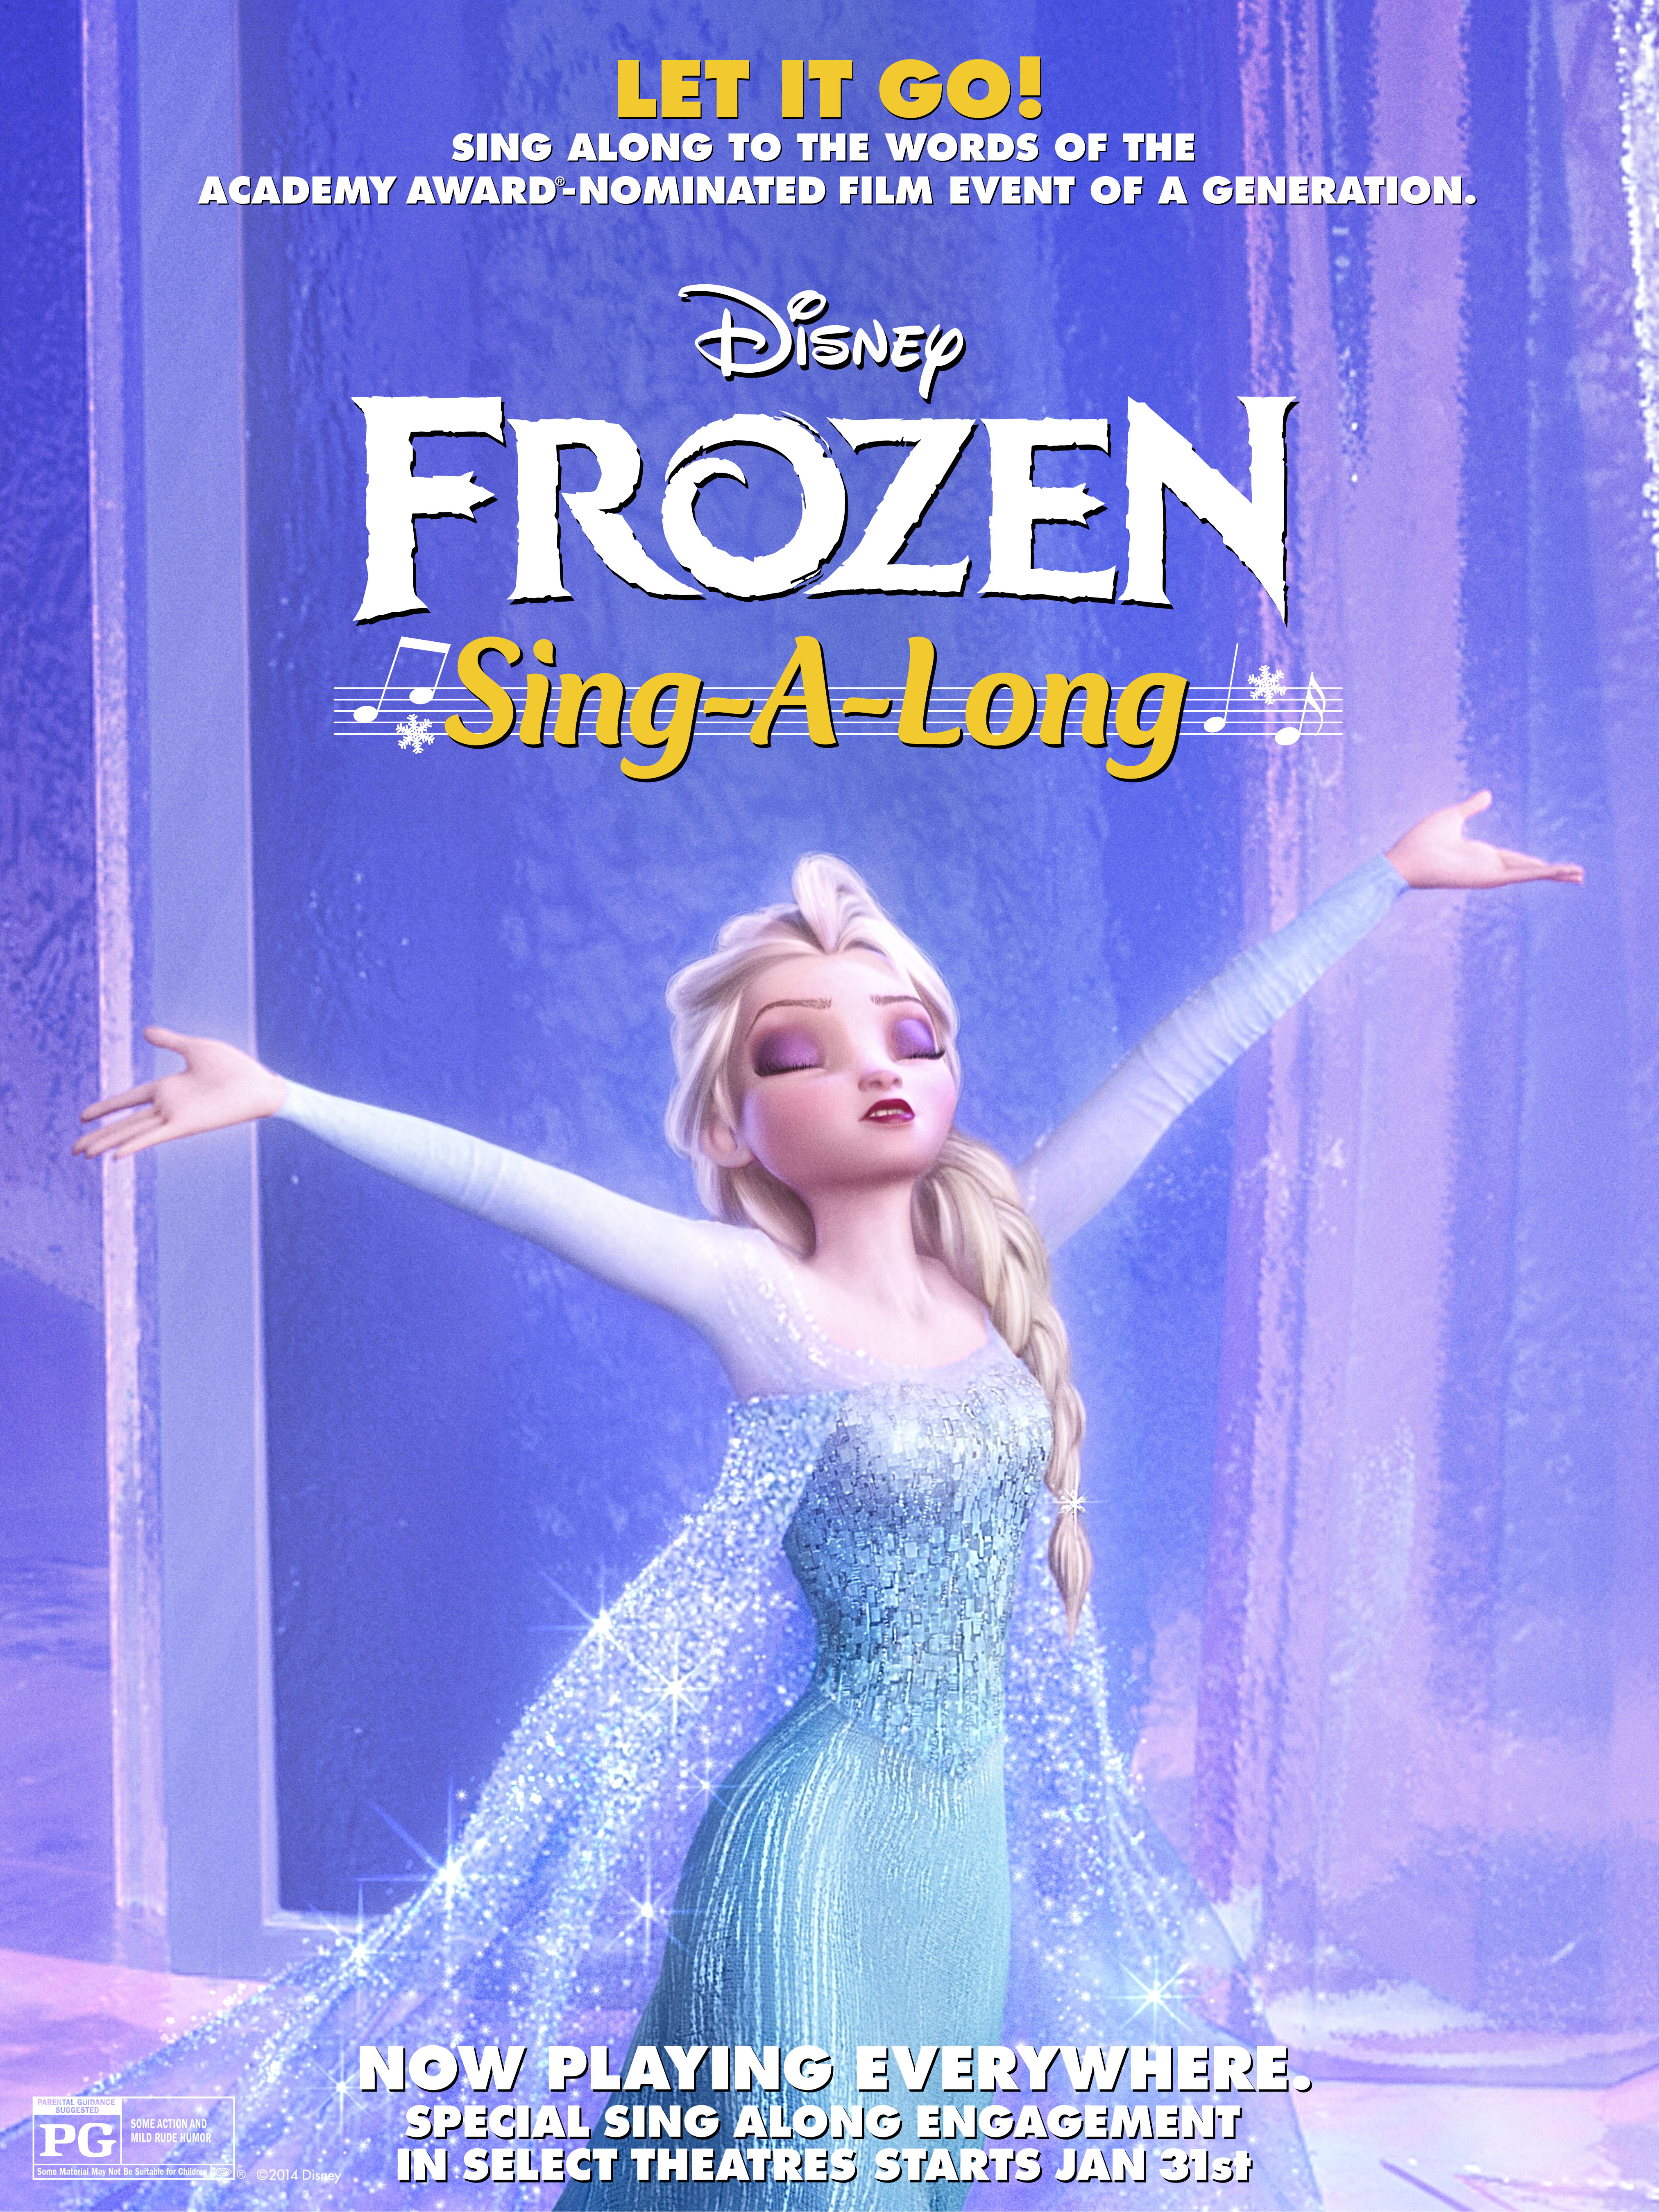 Disney’s Frozen Sing-Along